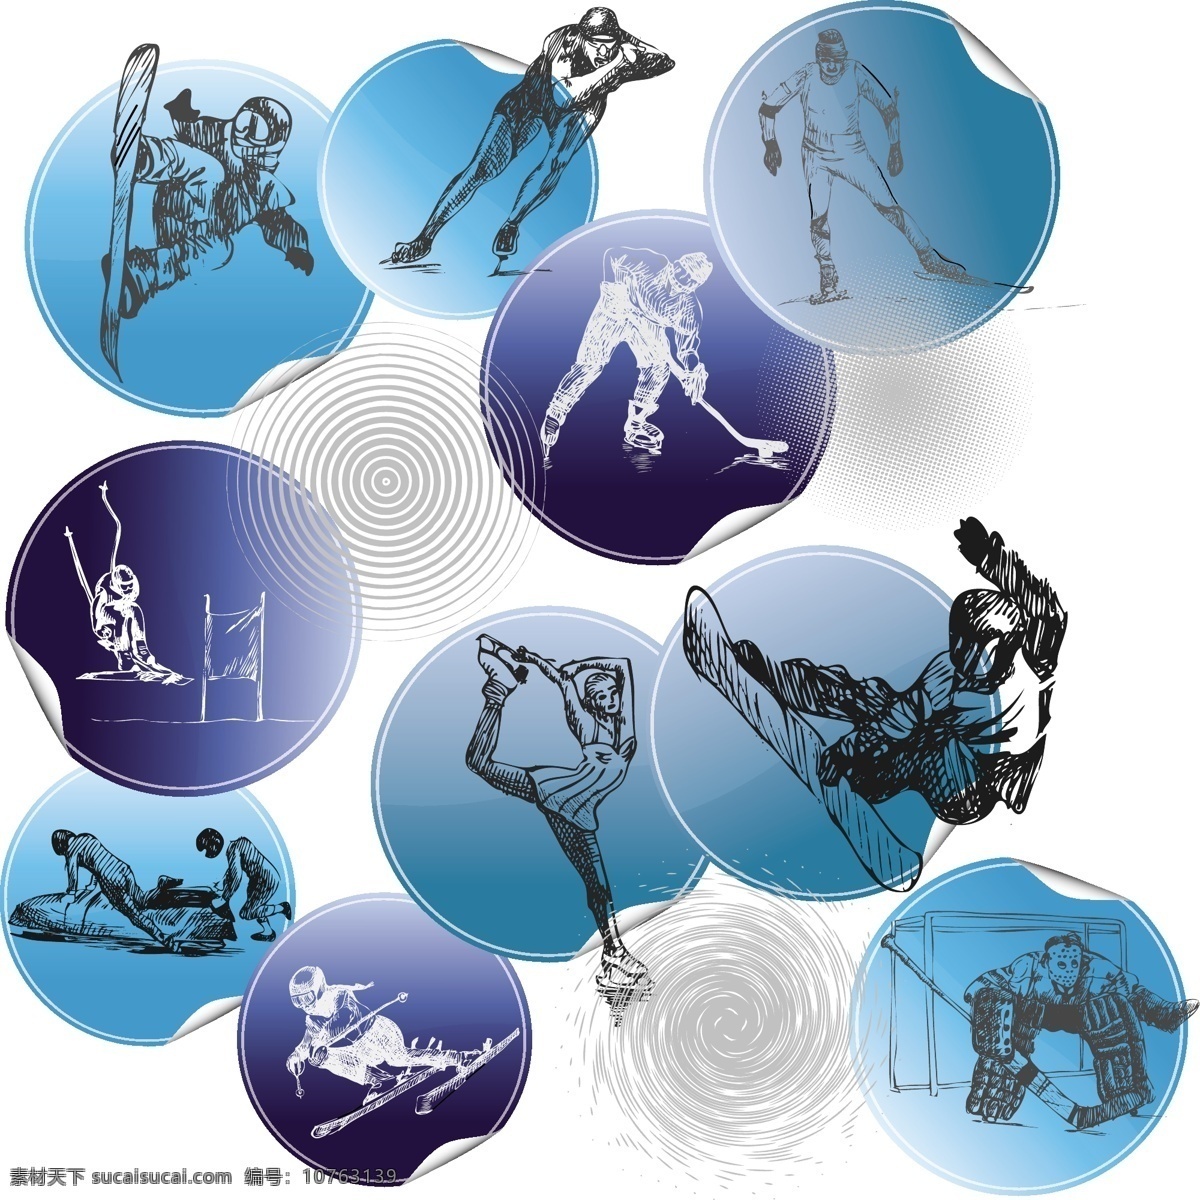 体育运动人物 滑雪 人物剪影 运动会 亚运会 奥运会 雪上运动 矢量图 体育 运动 标识 矢量人物 矢量 职业人物